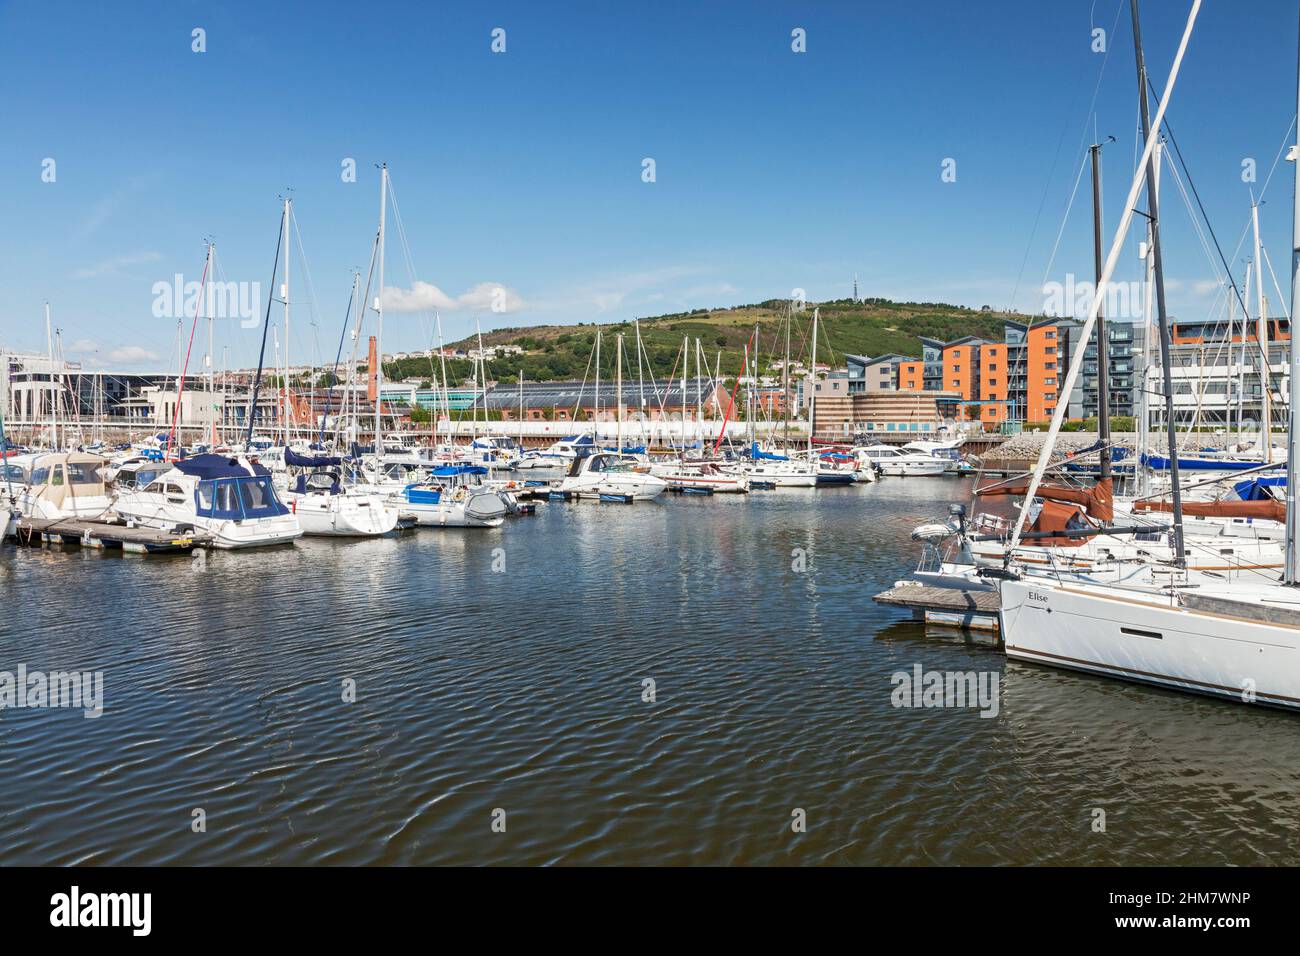 Port de plaisance de Swansea, quartier maritime, Swansea, pays de Galles du Sud, Royaume-Uni Banque D'Images